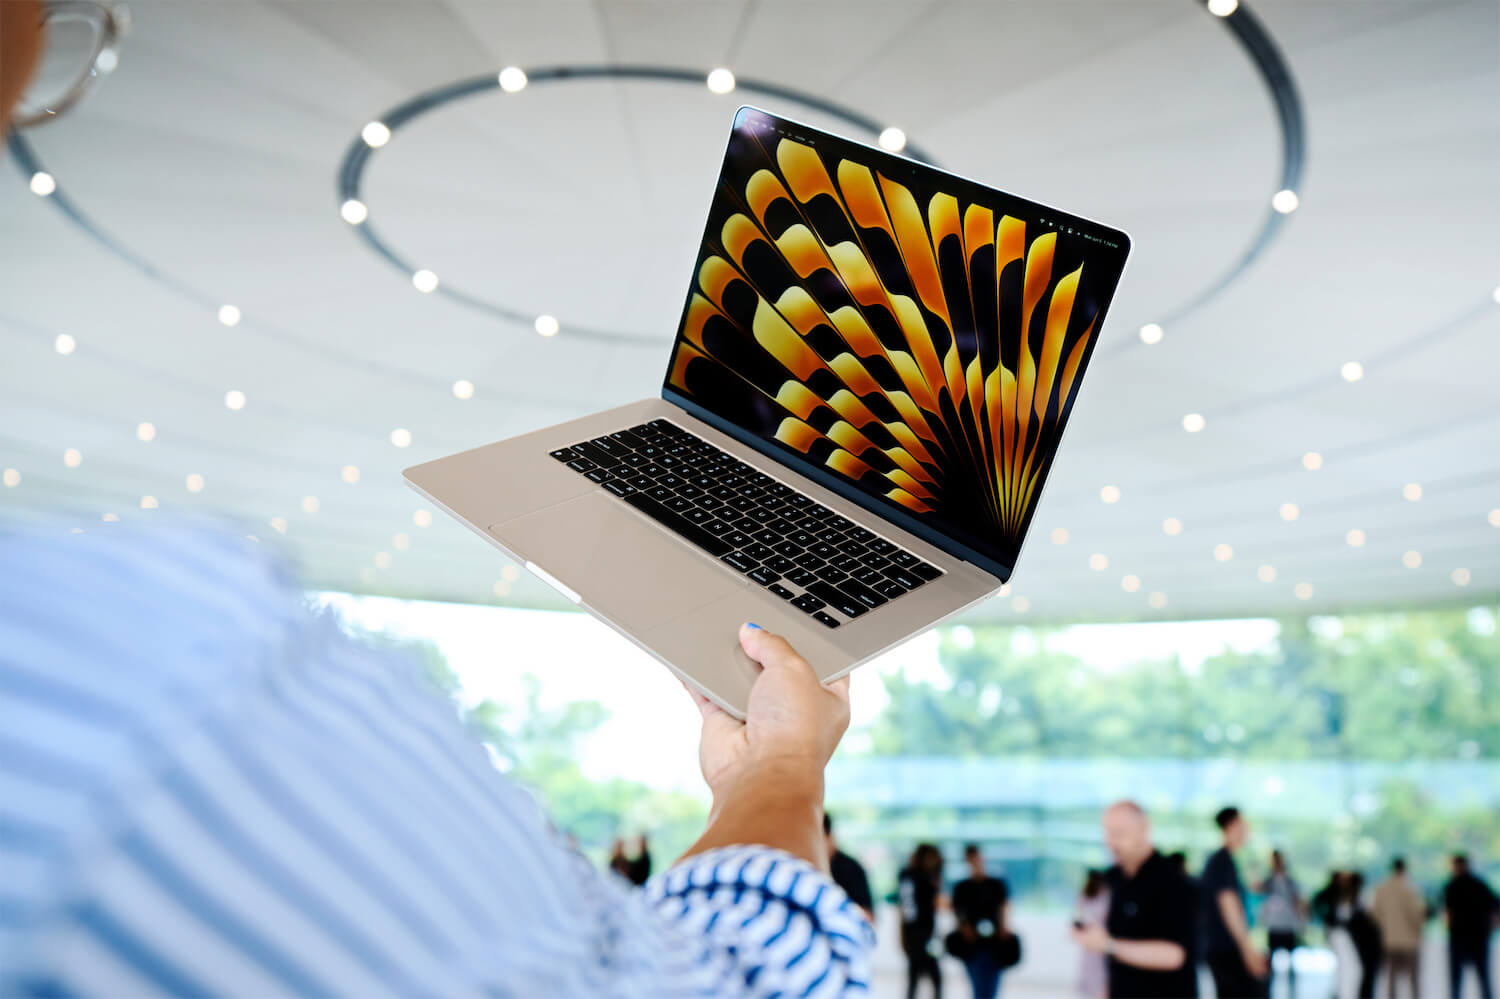 MacBook Air 15 inch mỏng nhất thế giới được trang bị chip M2 tích hợp sức mạnh vượt trội và tính di động trong một thiết kế nhẹ, không quạt. (Ảnh: Apple)